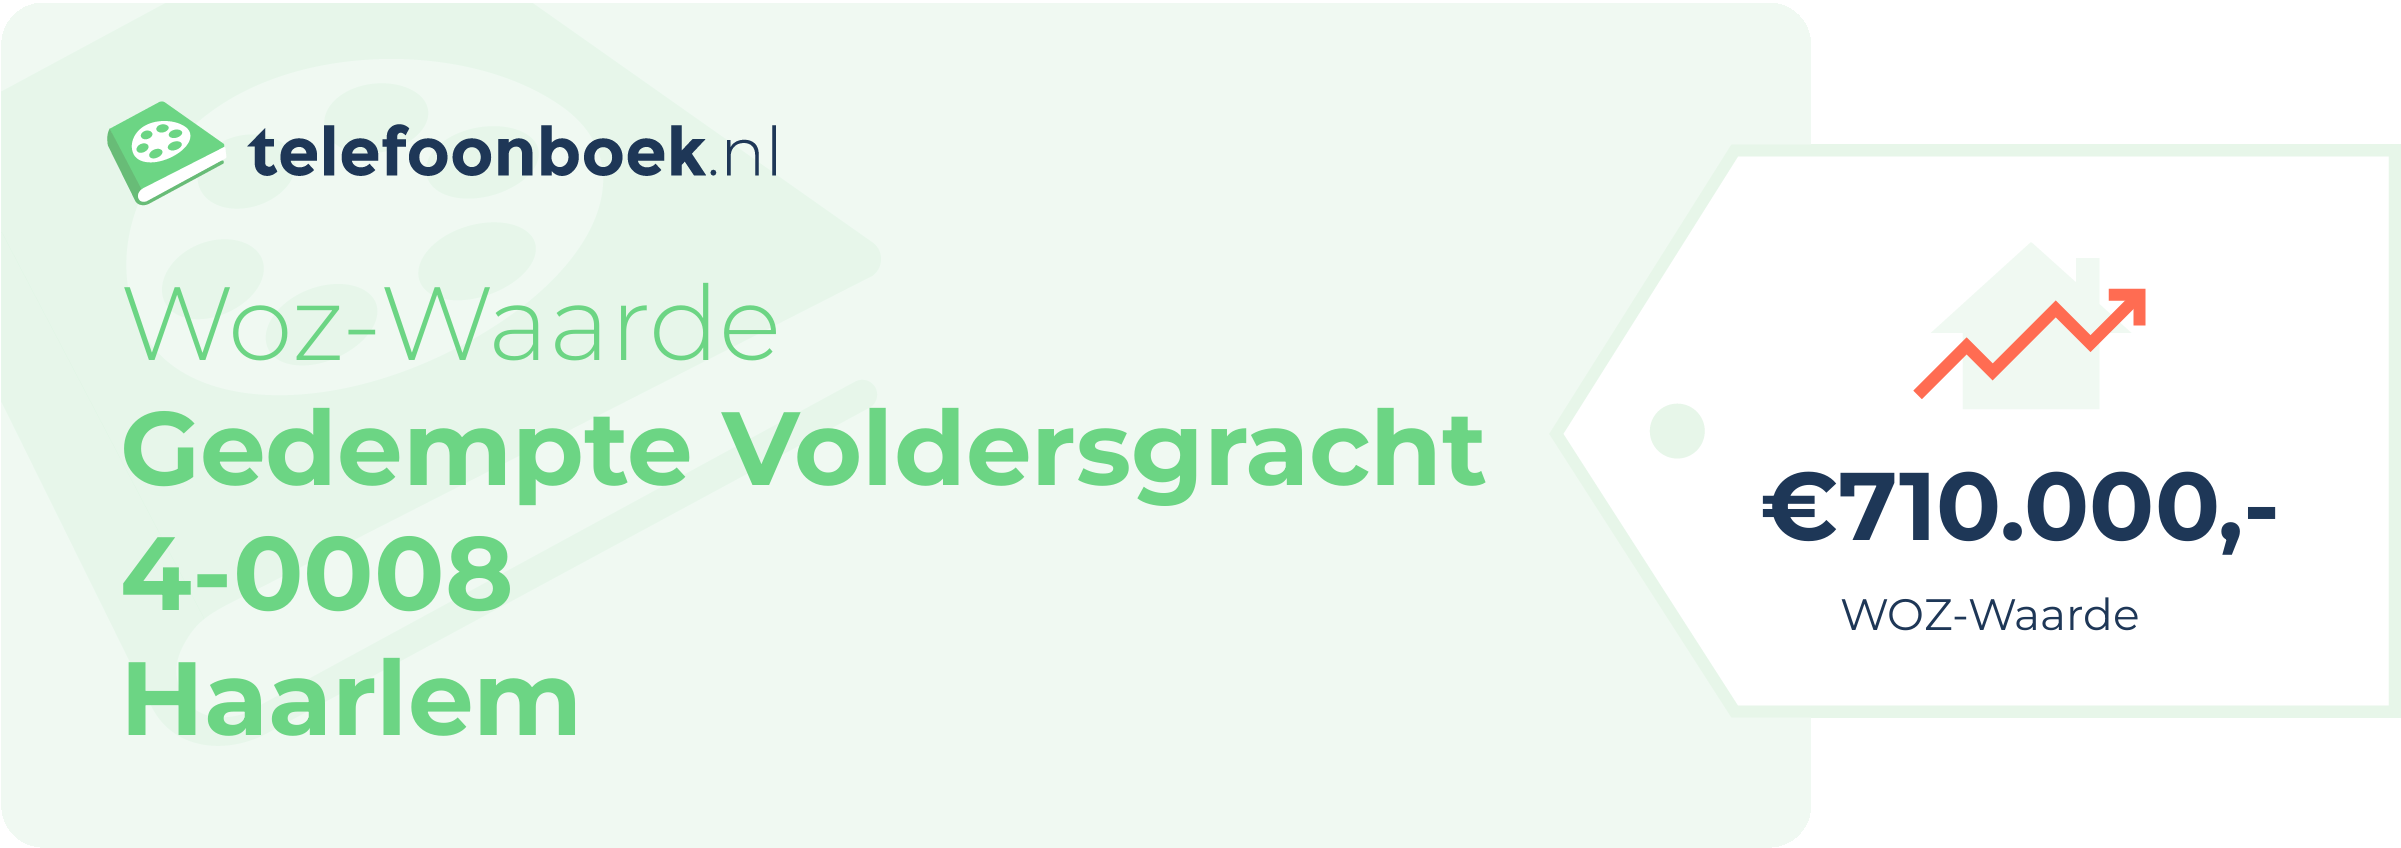 WOZ-waarde Gedempte Voldersgracht 4-0008 Haarlem